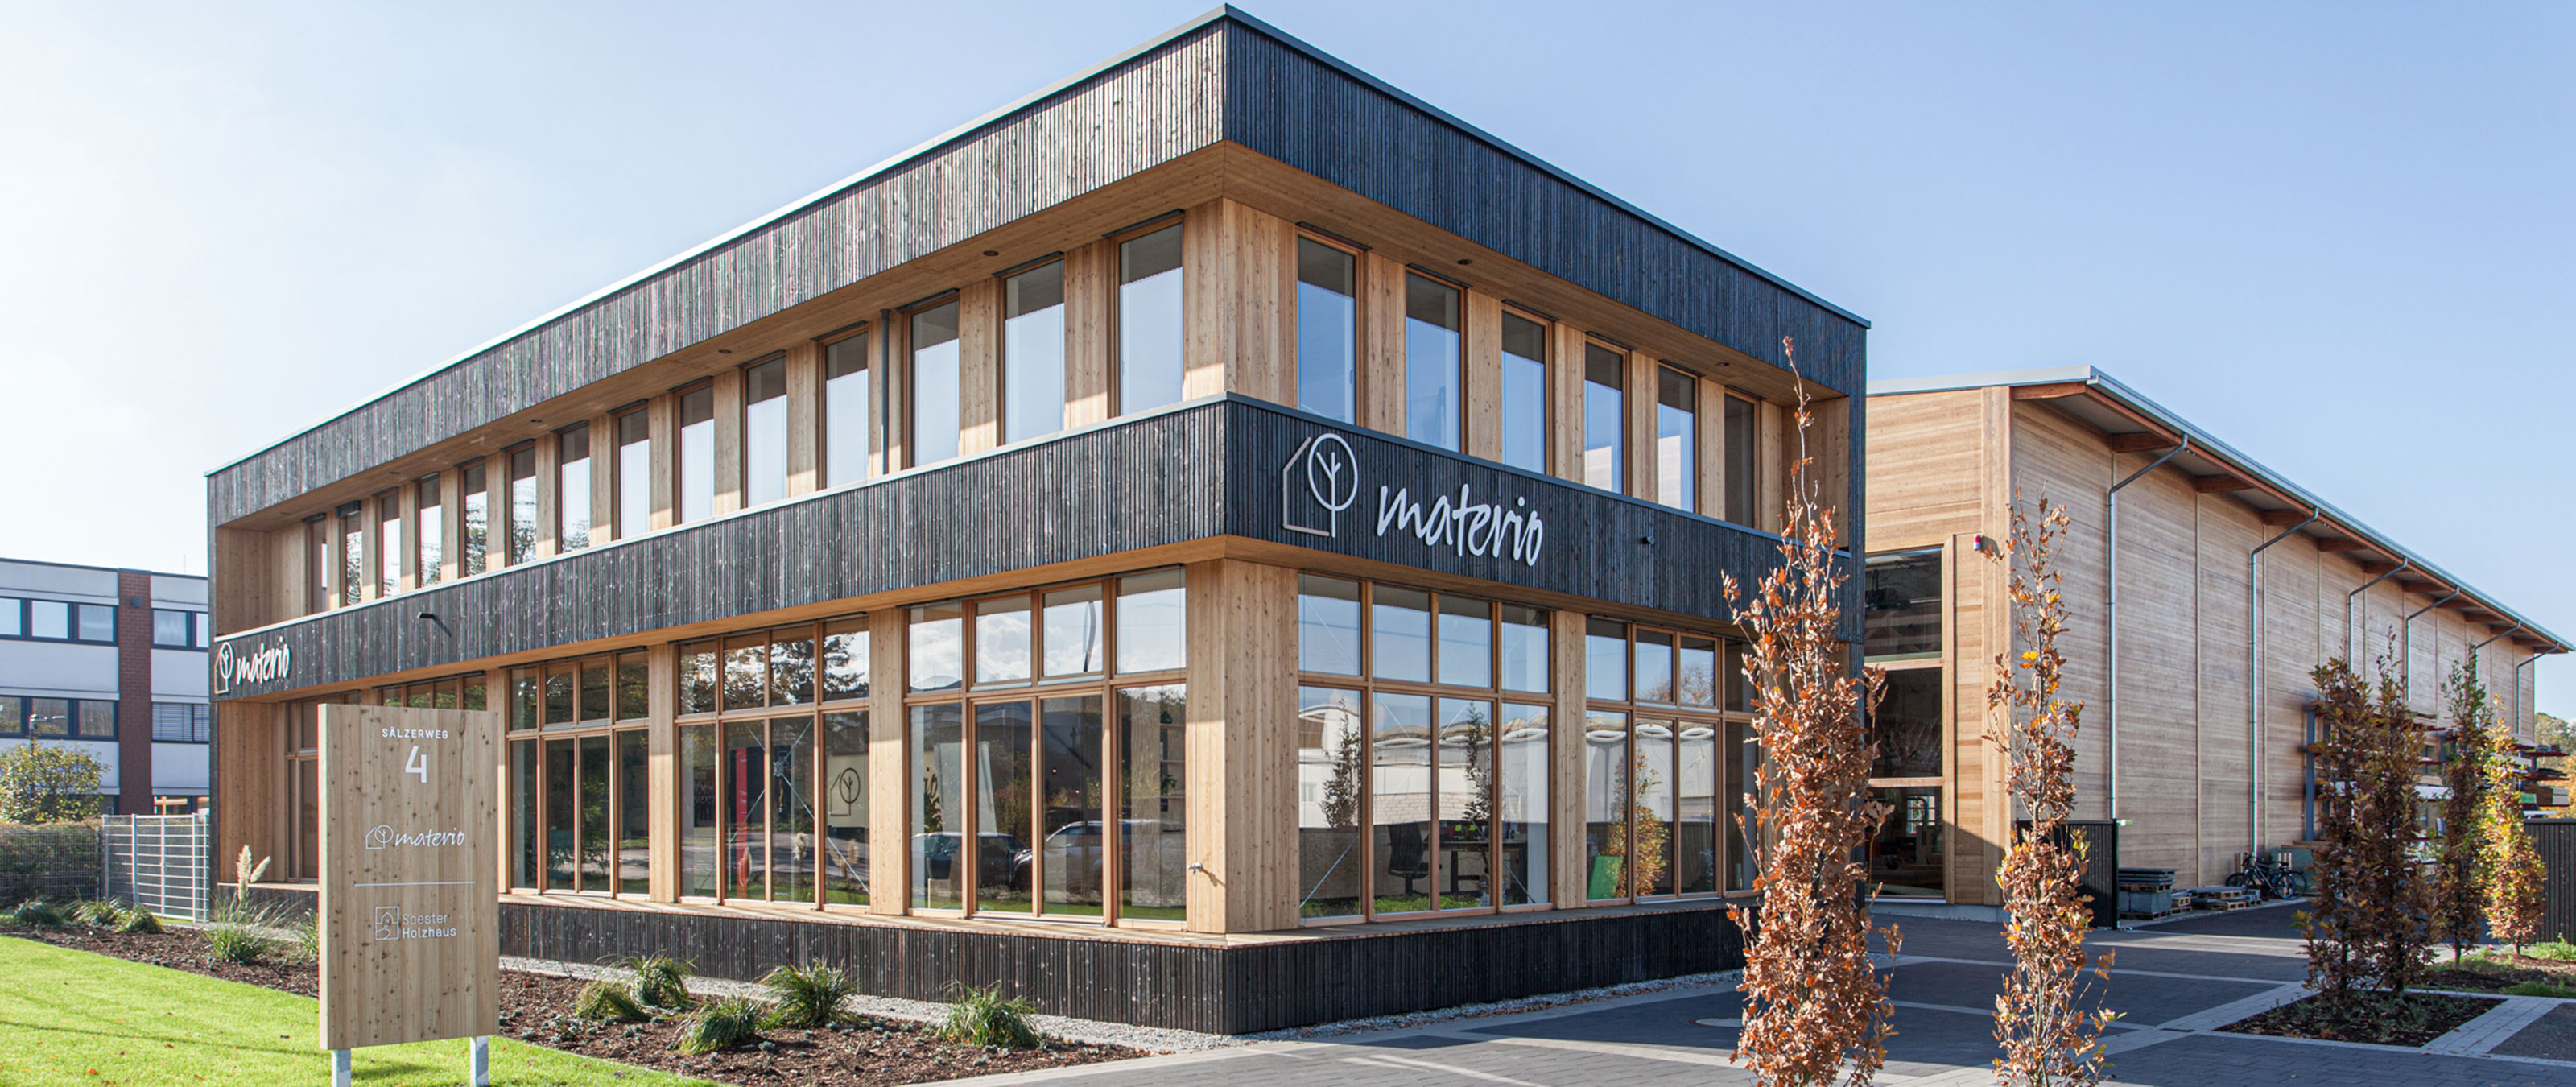 Materio company building